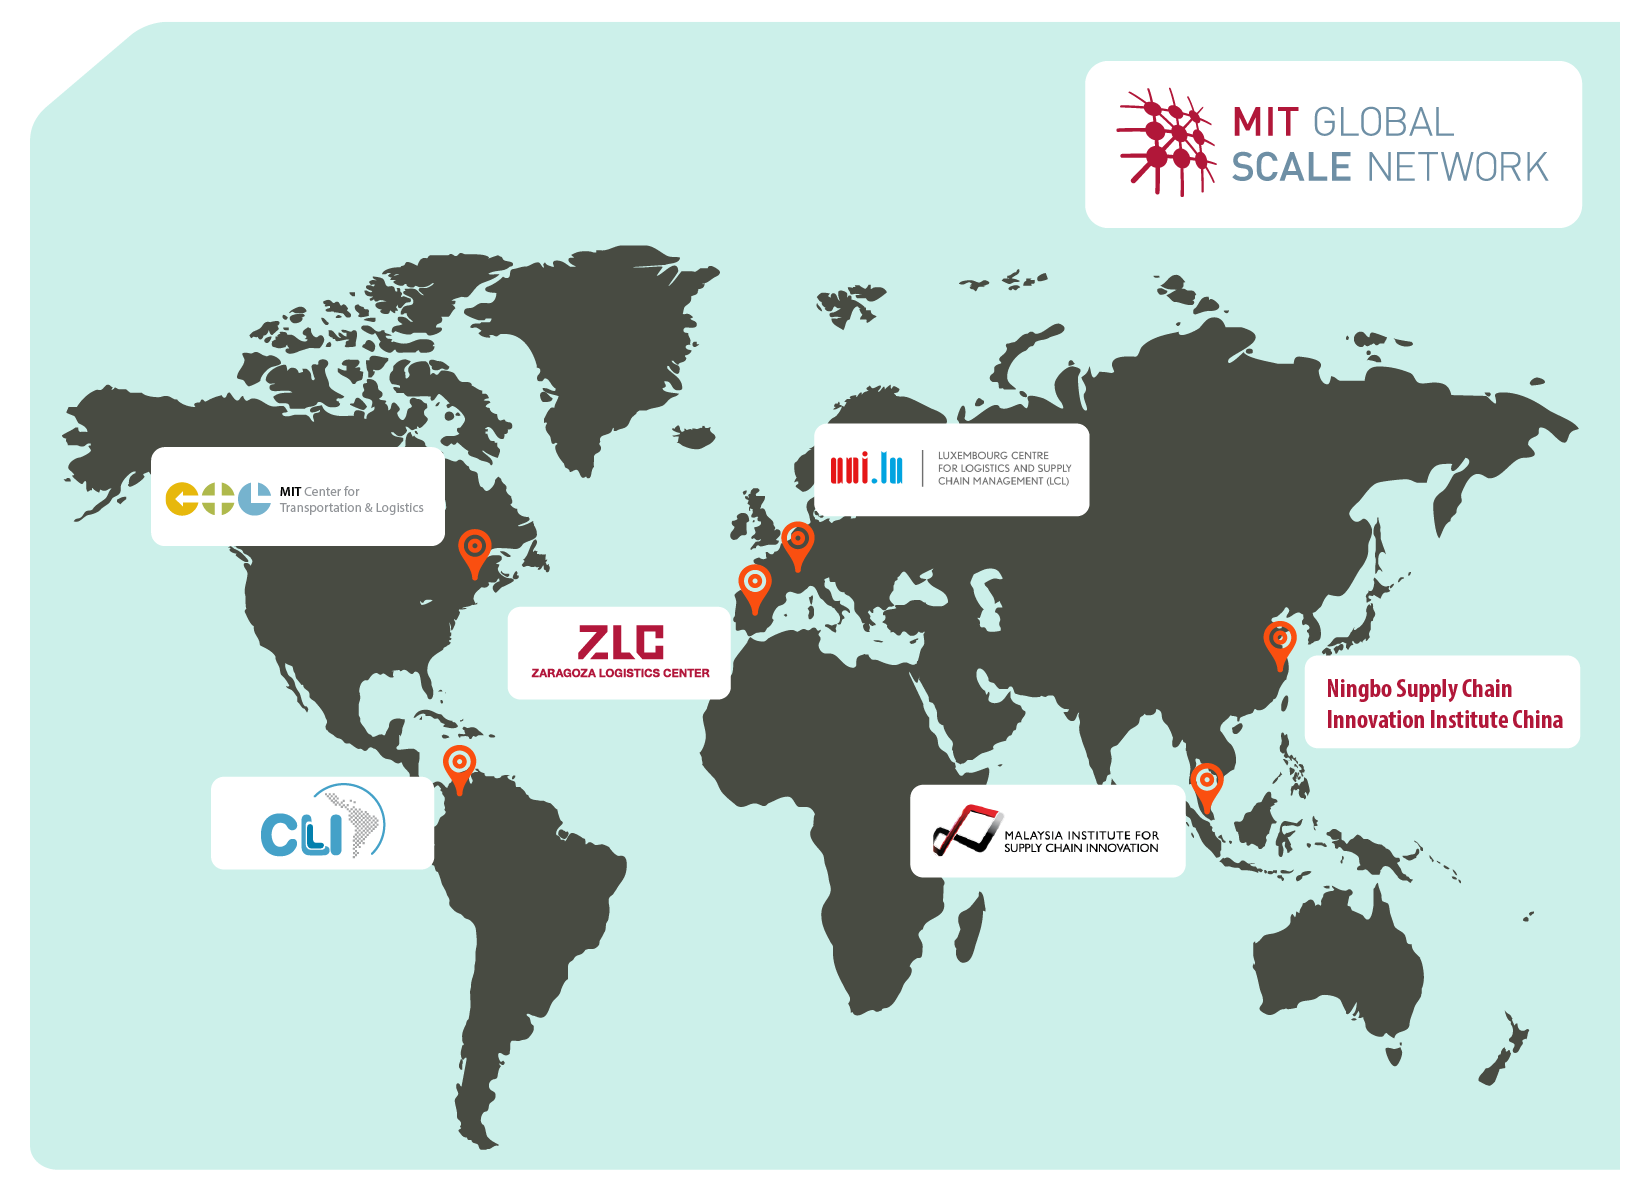 З розвитком міжнародних партнерських домовленостей, її почали викладати і в інших університетах світу, які на сьогоднішній день утворюють так звану MIT Global Scale Network